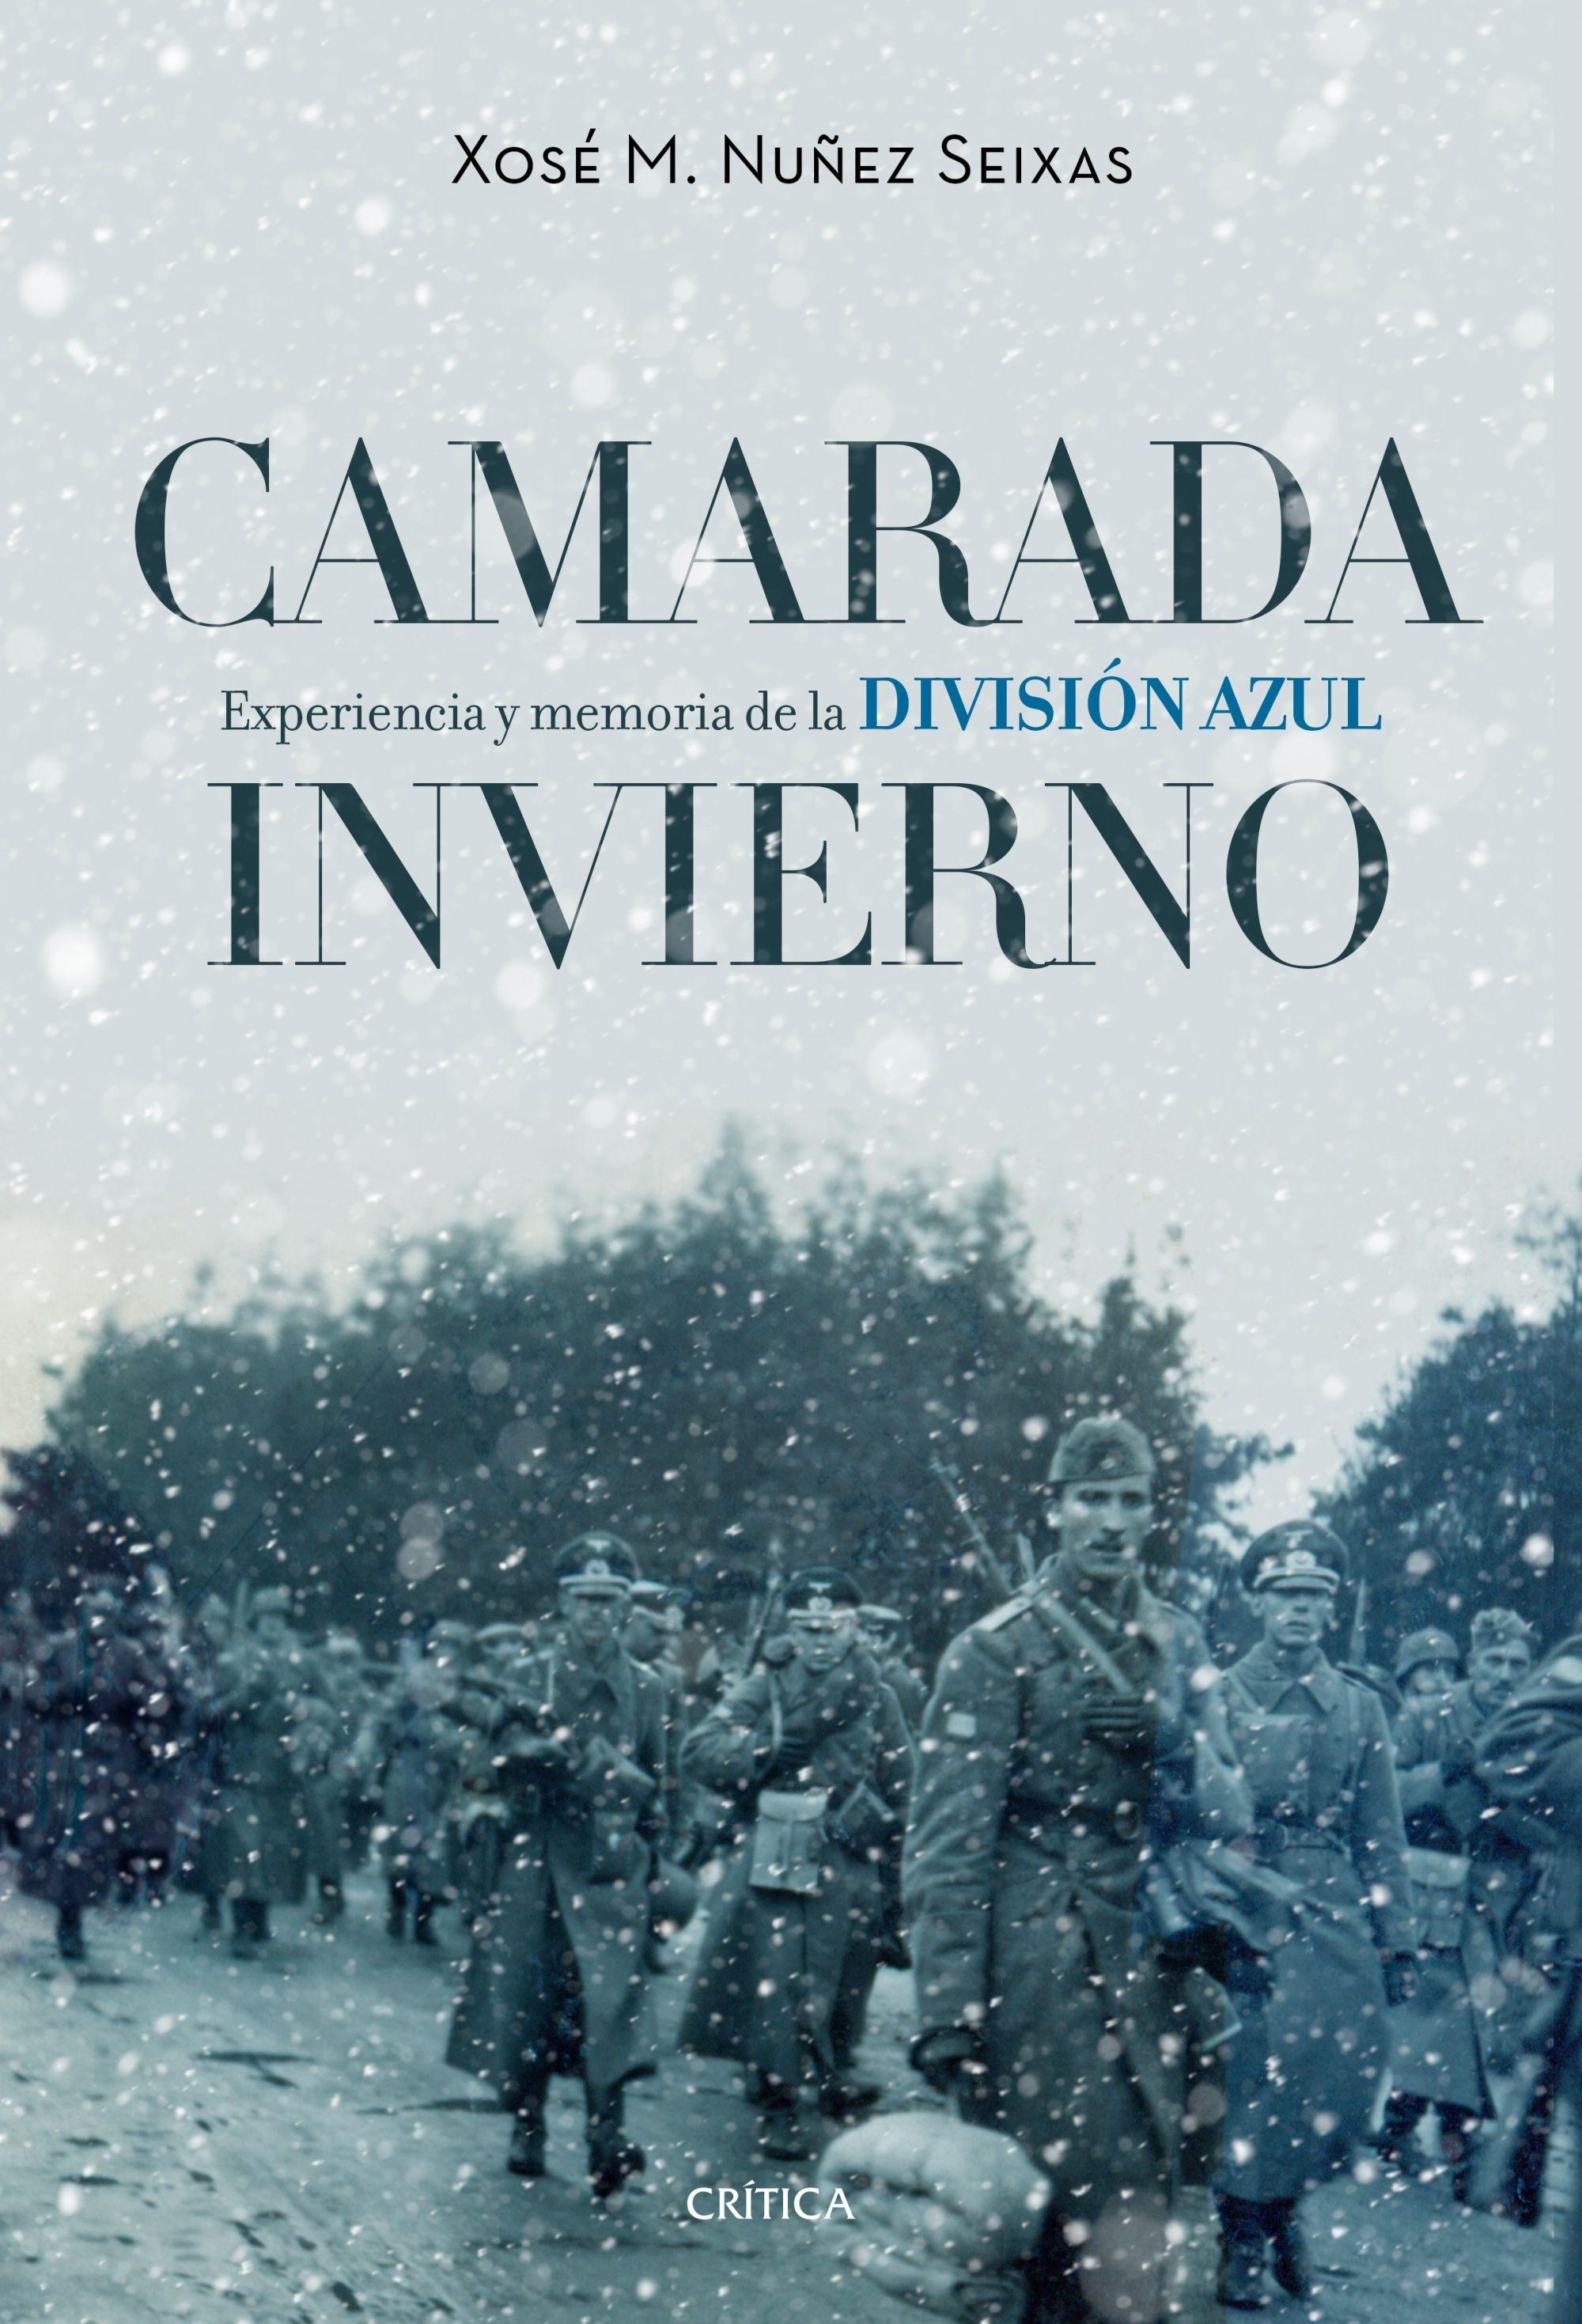 Camarada Invierno "Experiencia y Memoria de la División Azul (1941-1945)". 